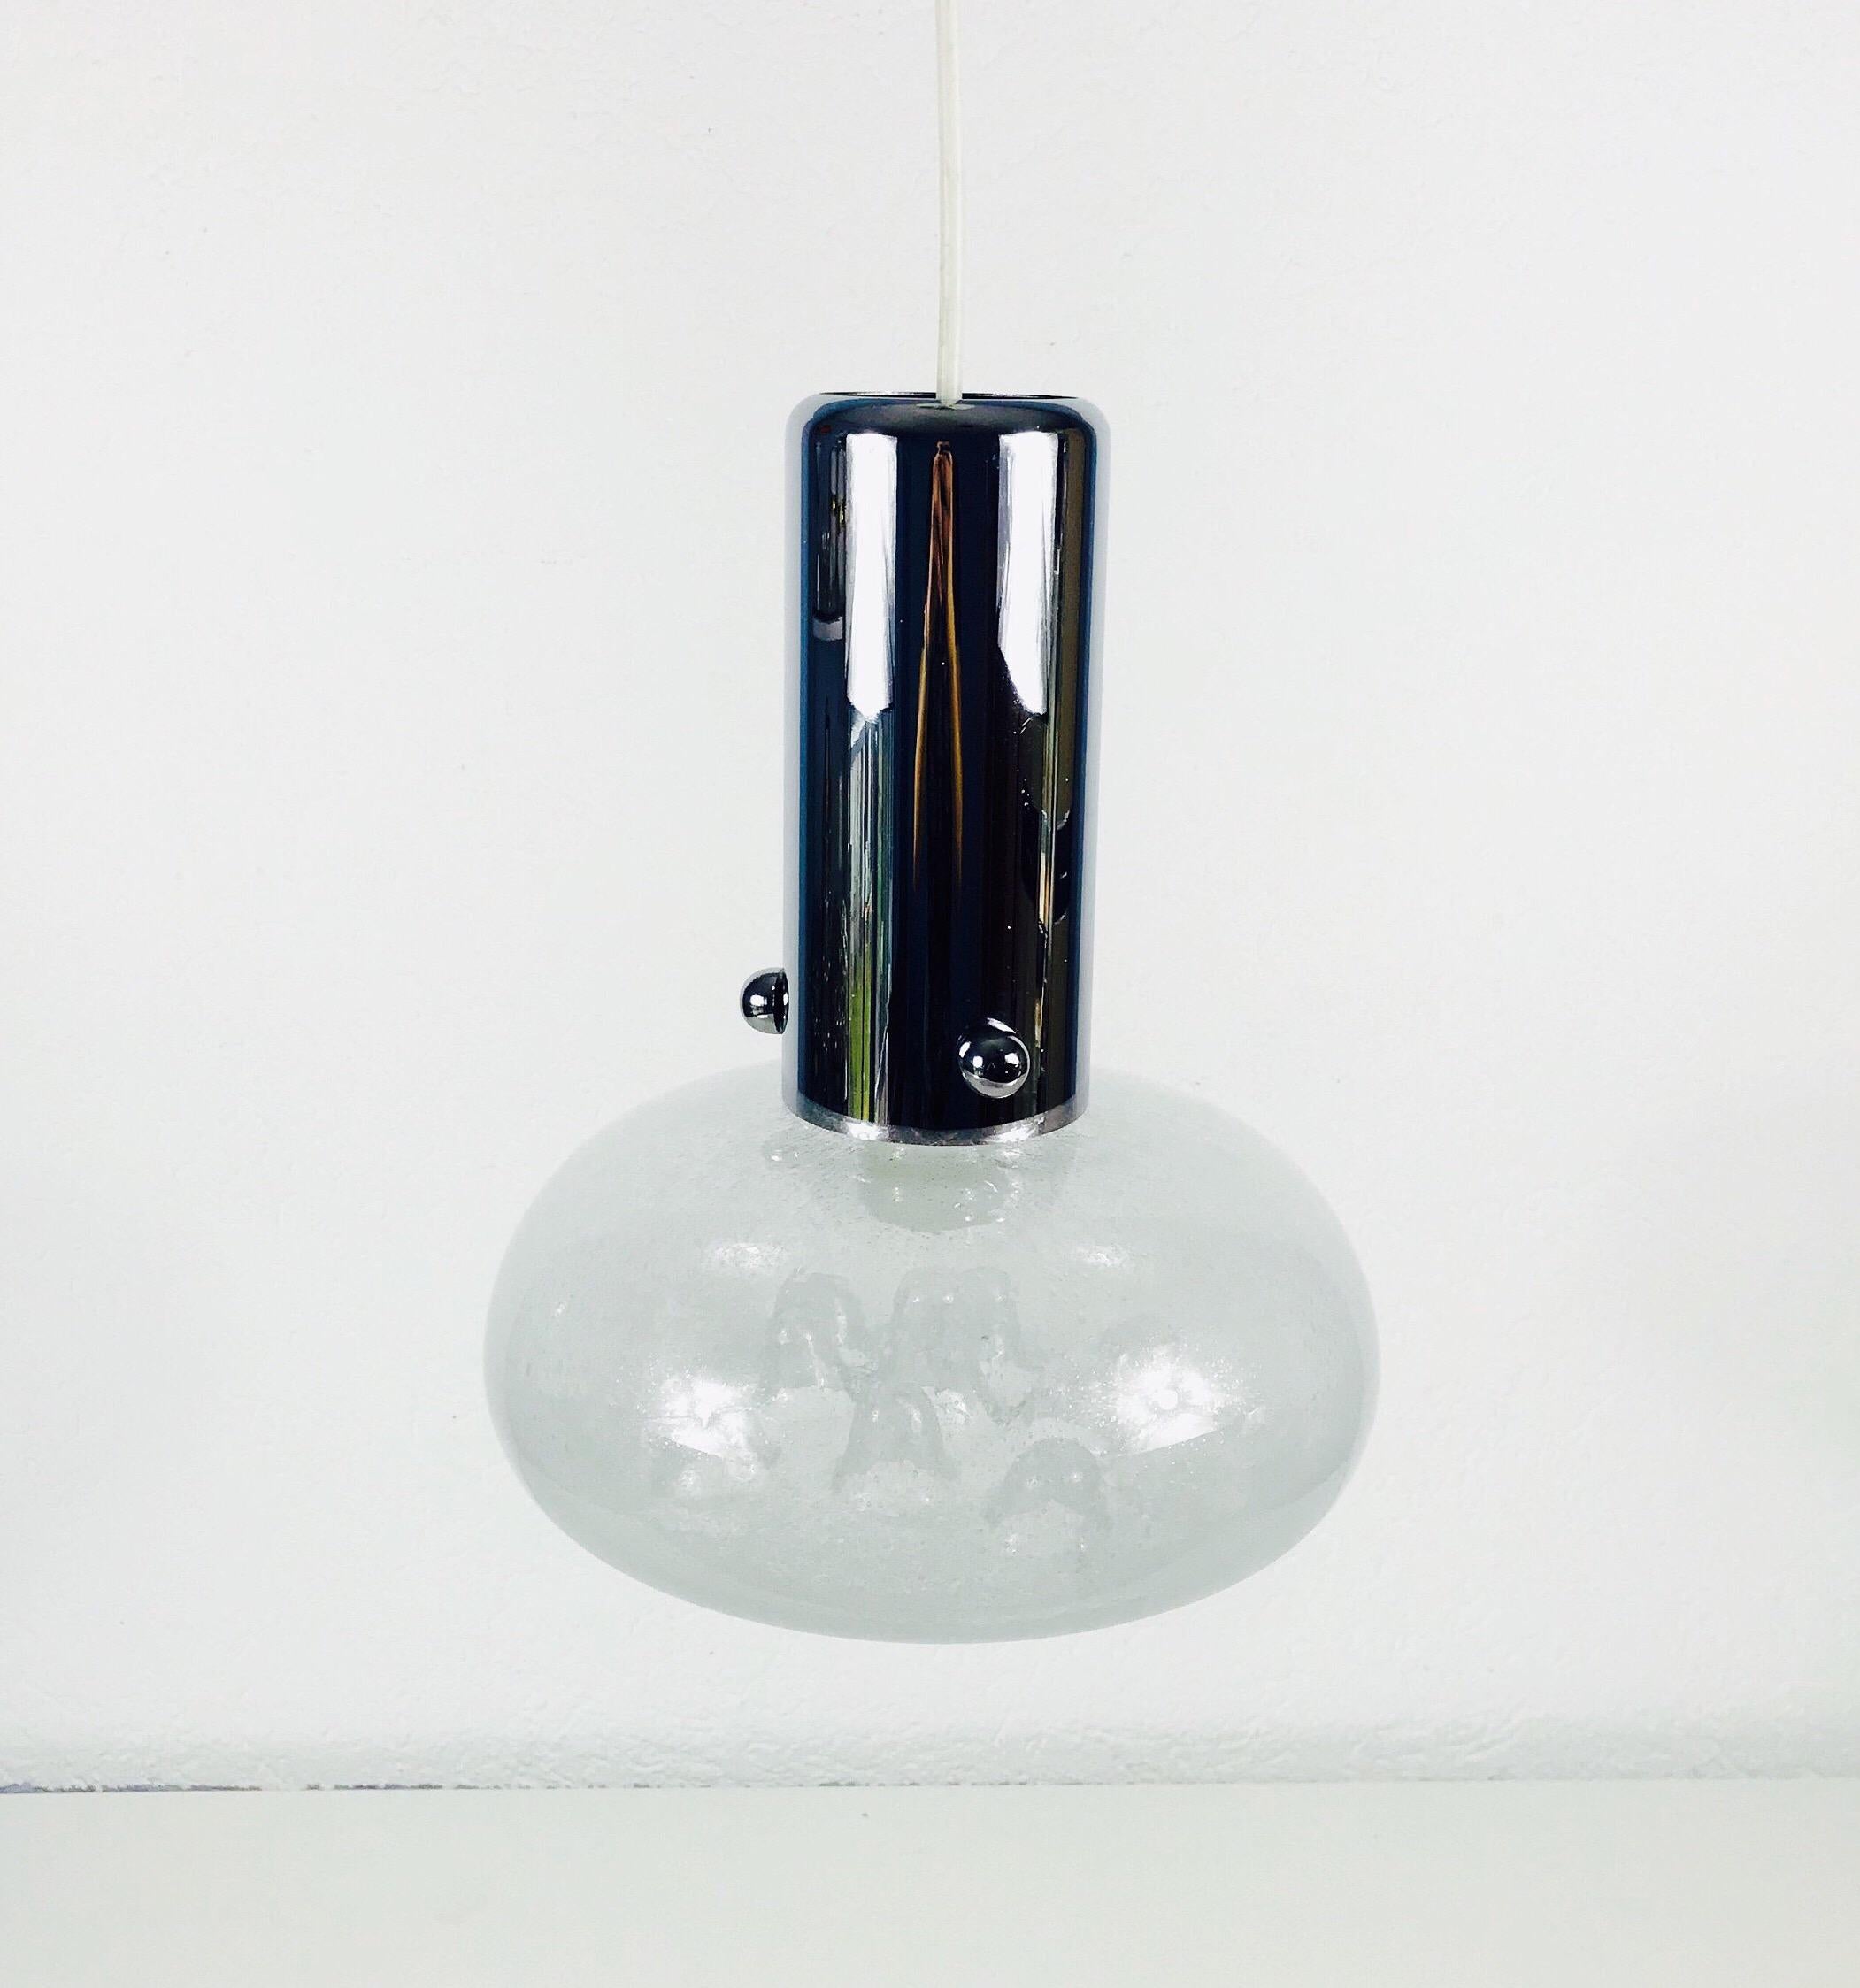 Eine in den 1960er Jahren in Italien hergestellte Hängeleuchte. Sie fasziniert mit ihrem Muranoglas und der schönen Form.

Abmessungen:

Höhe 58 cm

Durchmesser 28 cm

Die Leuchte benötigt eine E27-Glühbirne.